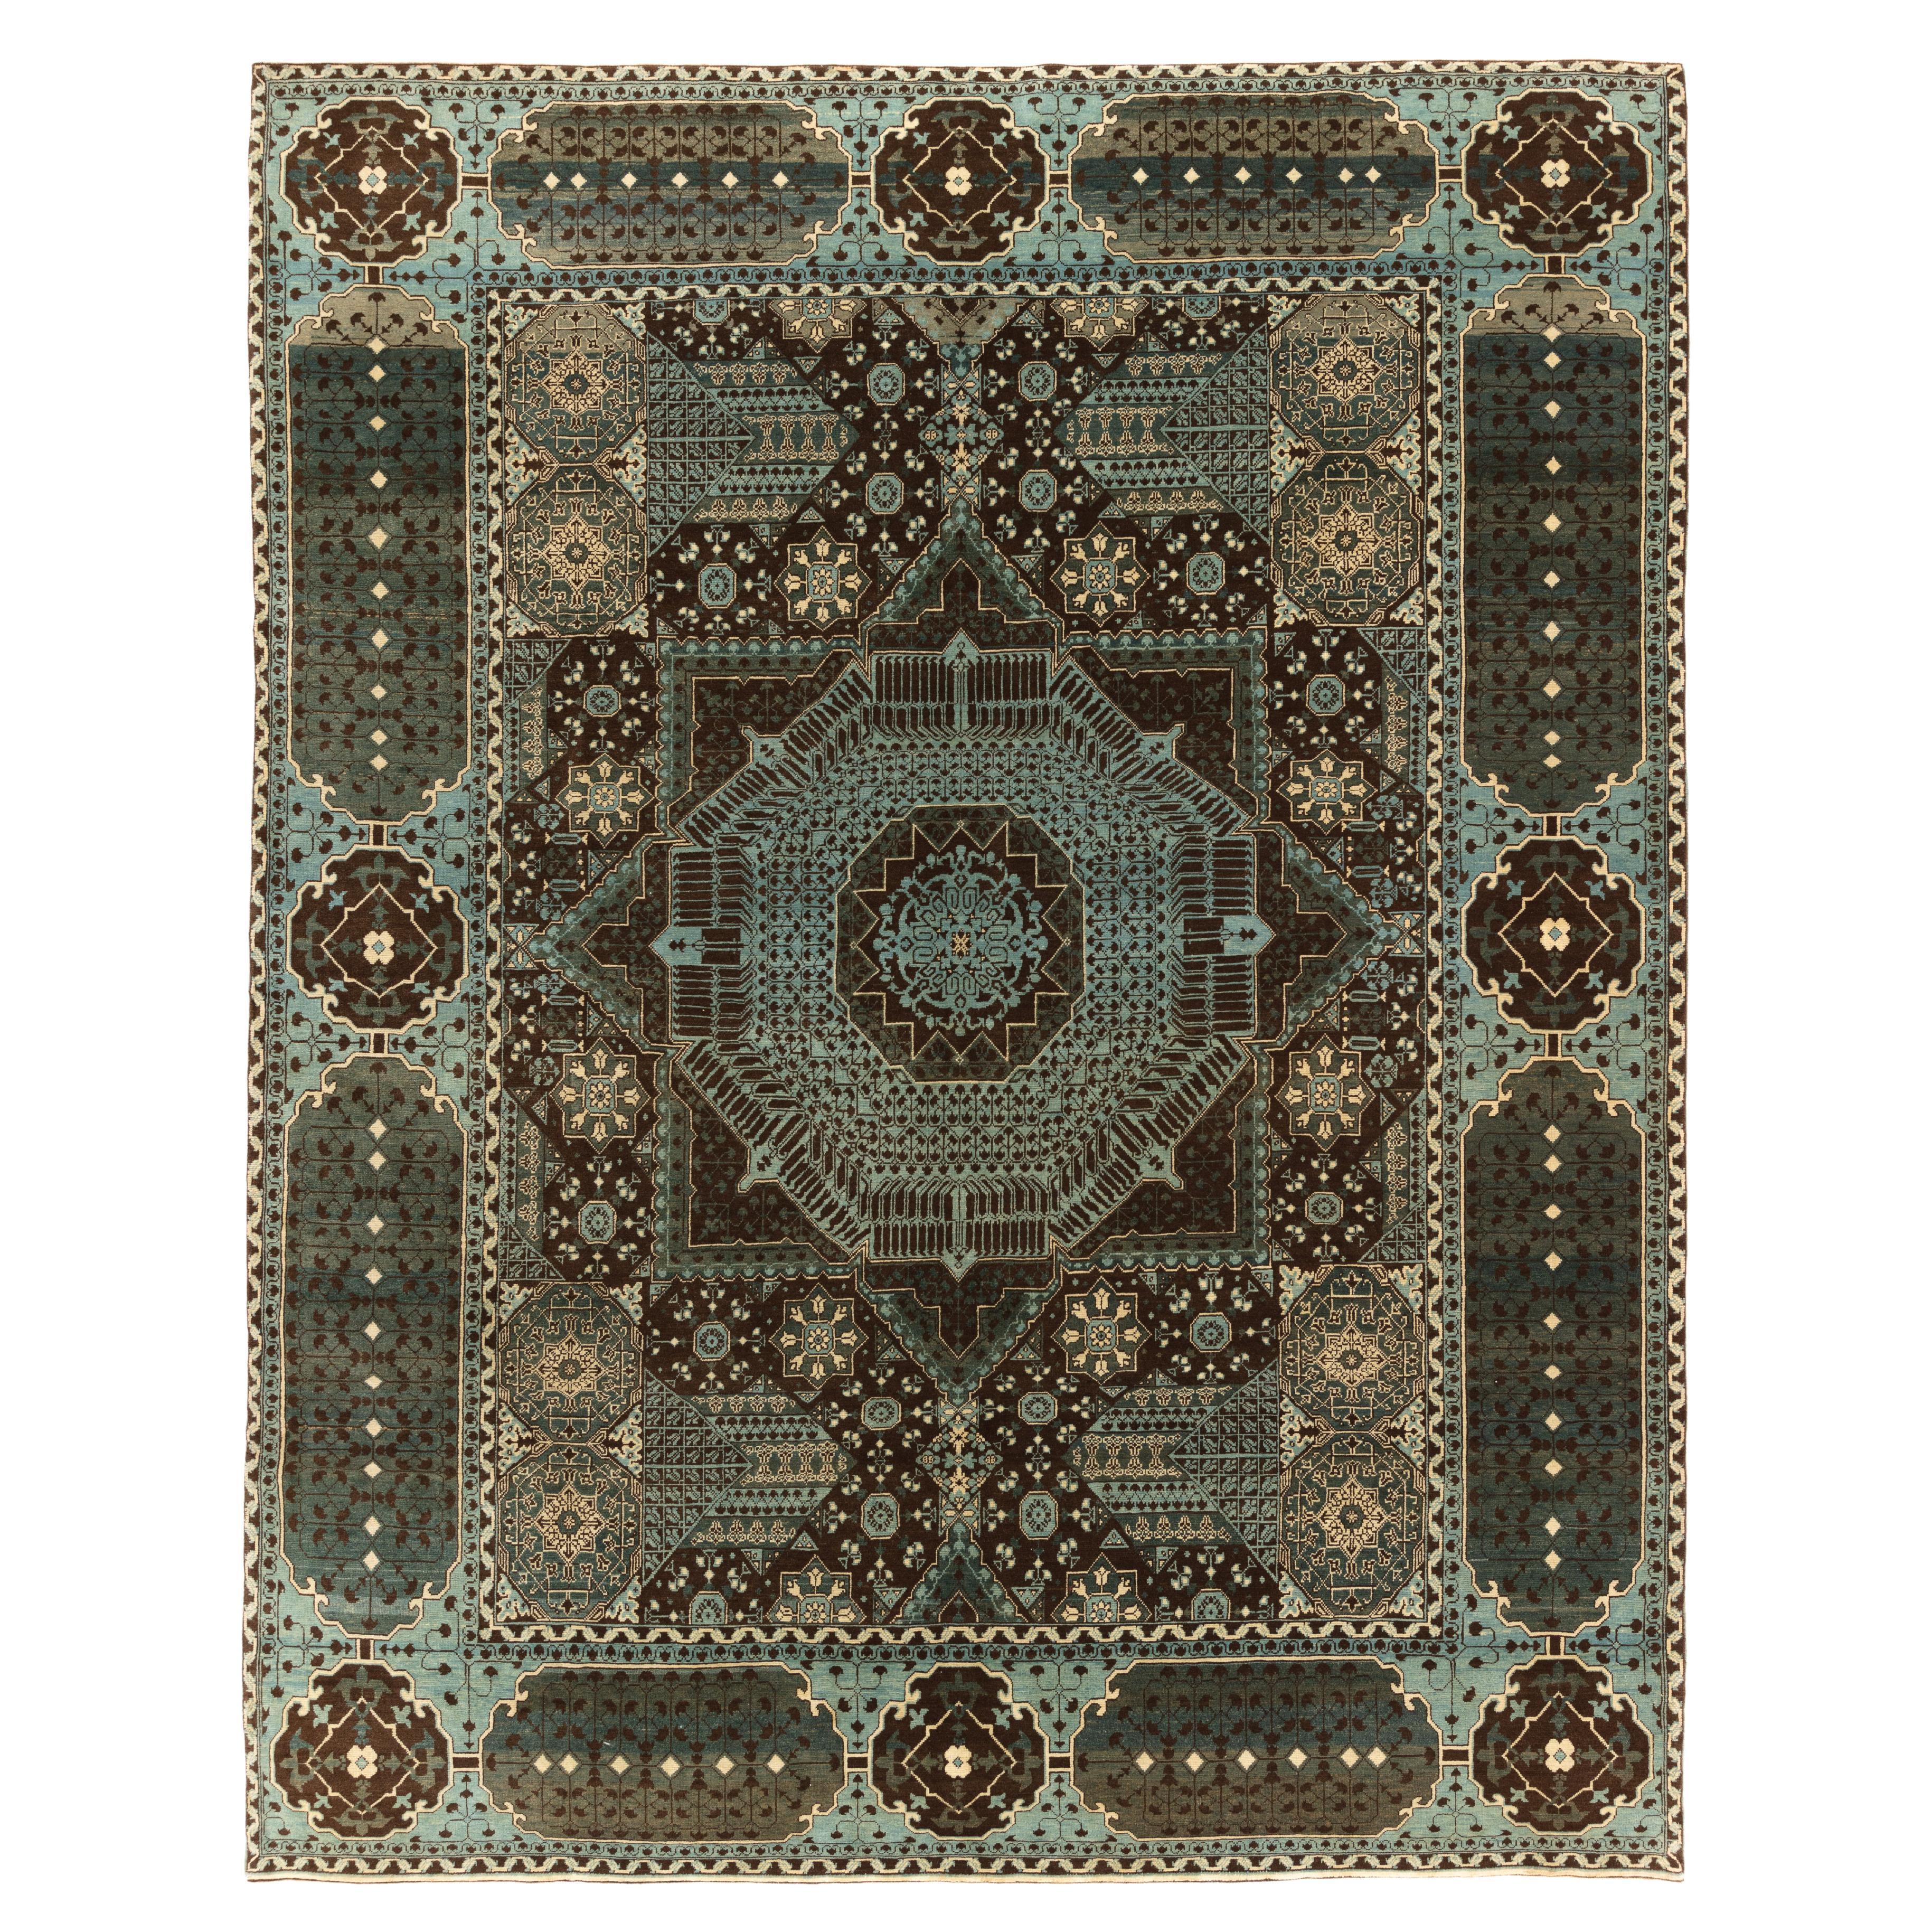 Ararat-Teppiche The Simonetti Mamluk Teppich 16. Jahrhundert Revival Teppich, natürlich gefärbt 